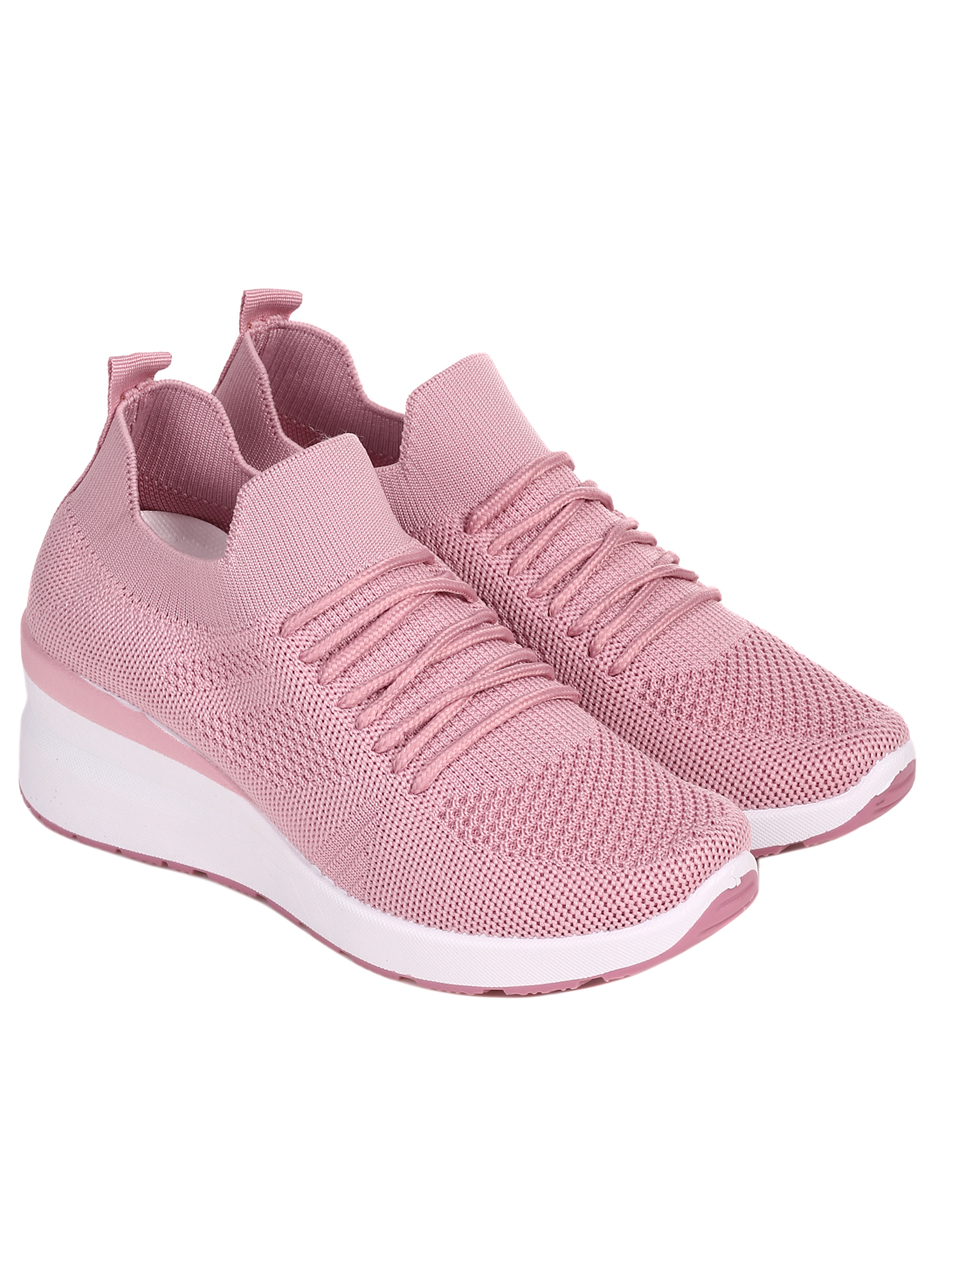 Ежедневни дамски обувки в розово 3U-22045 pink